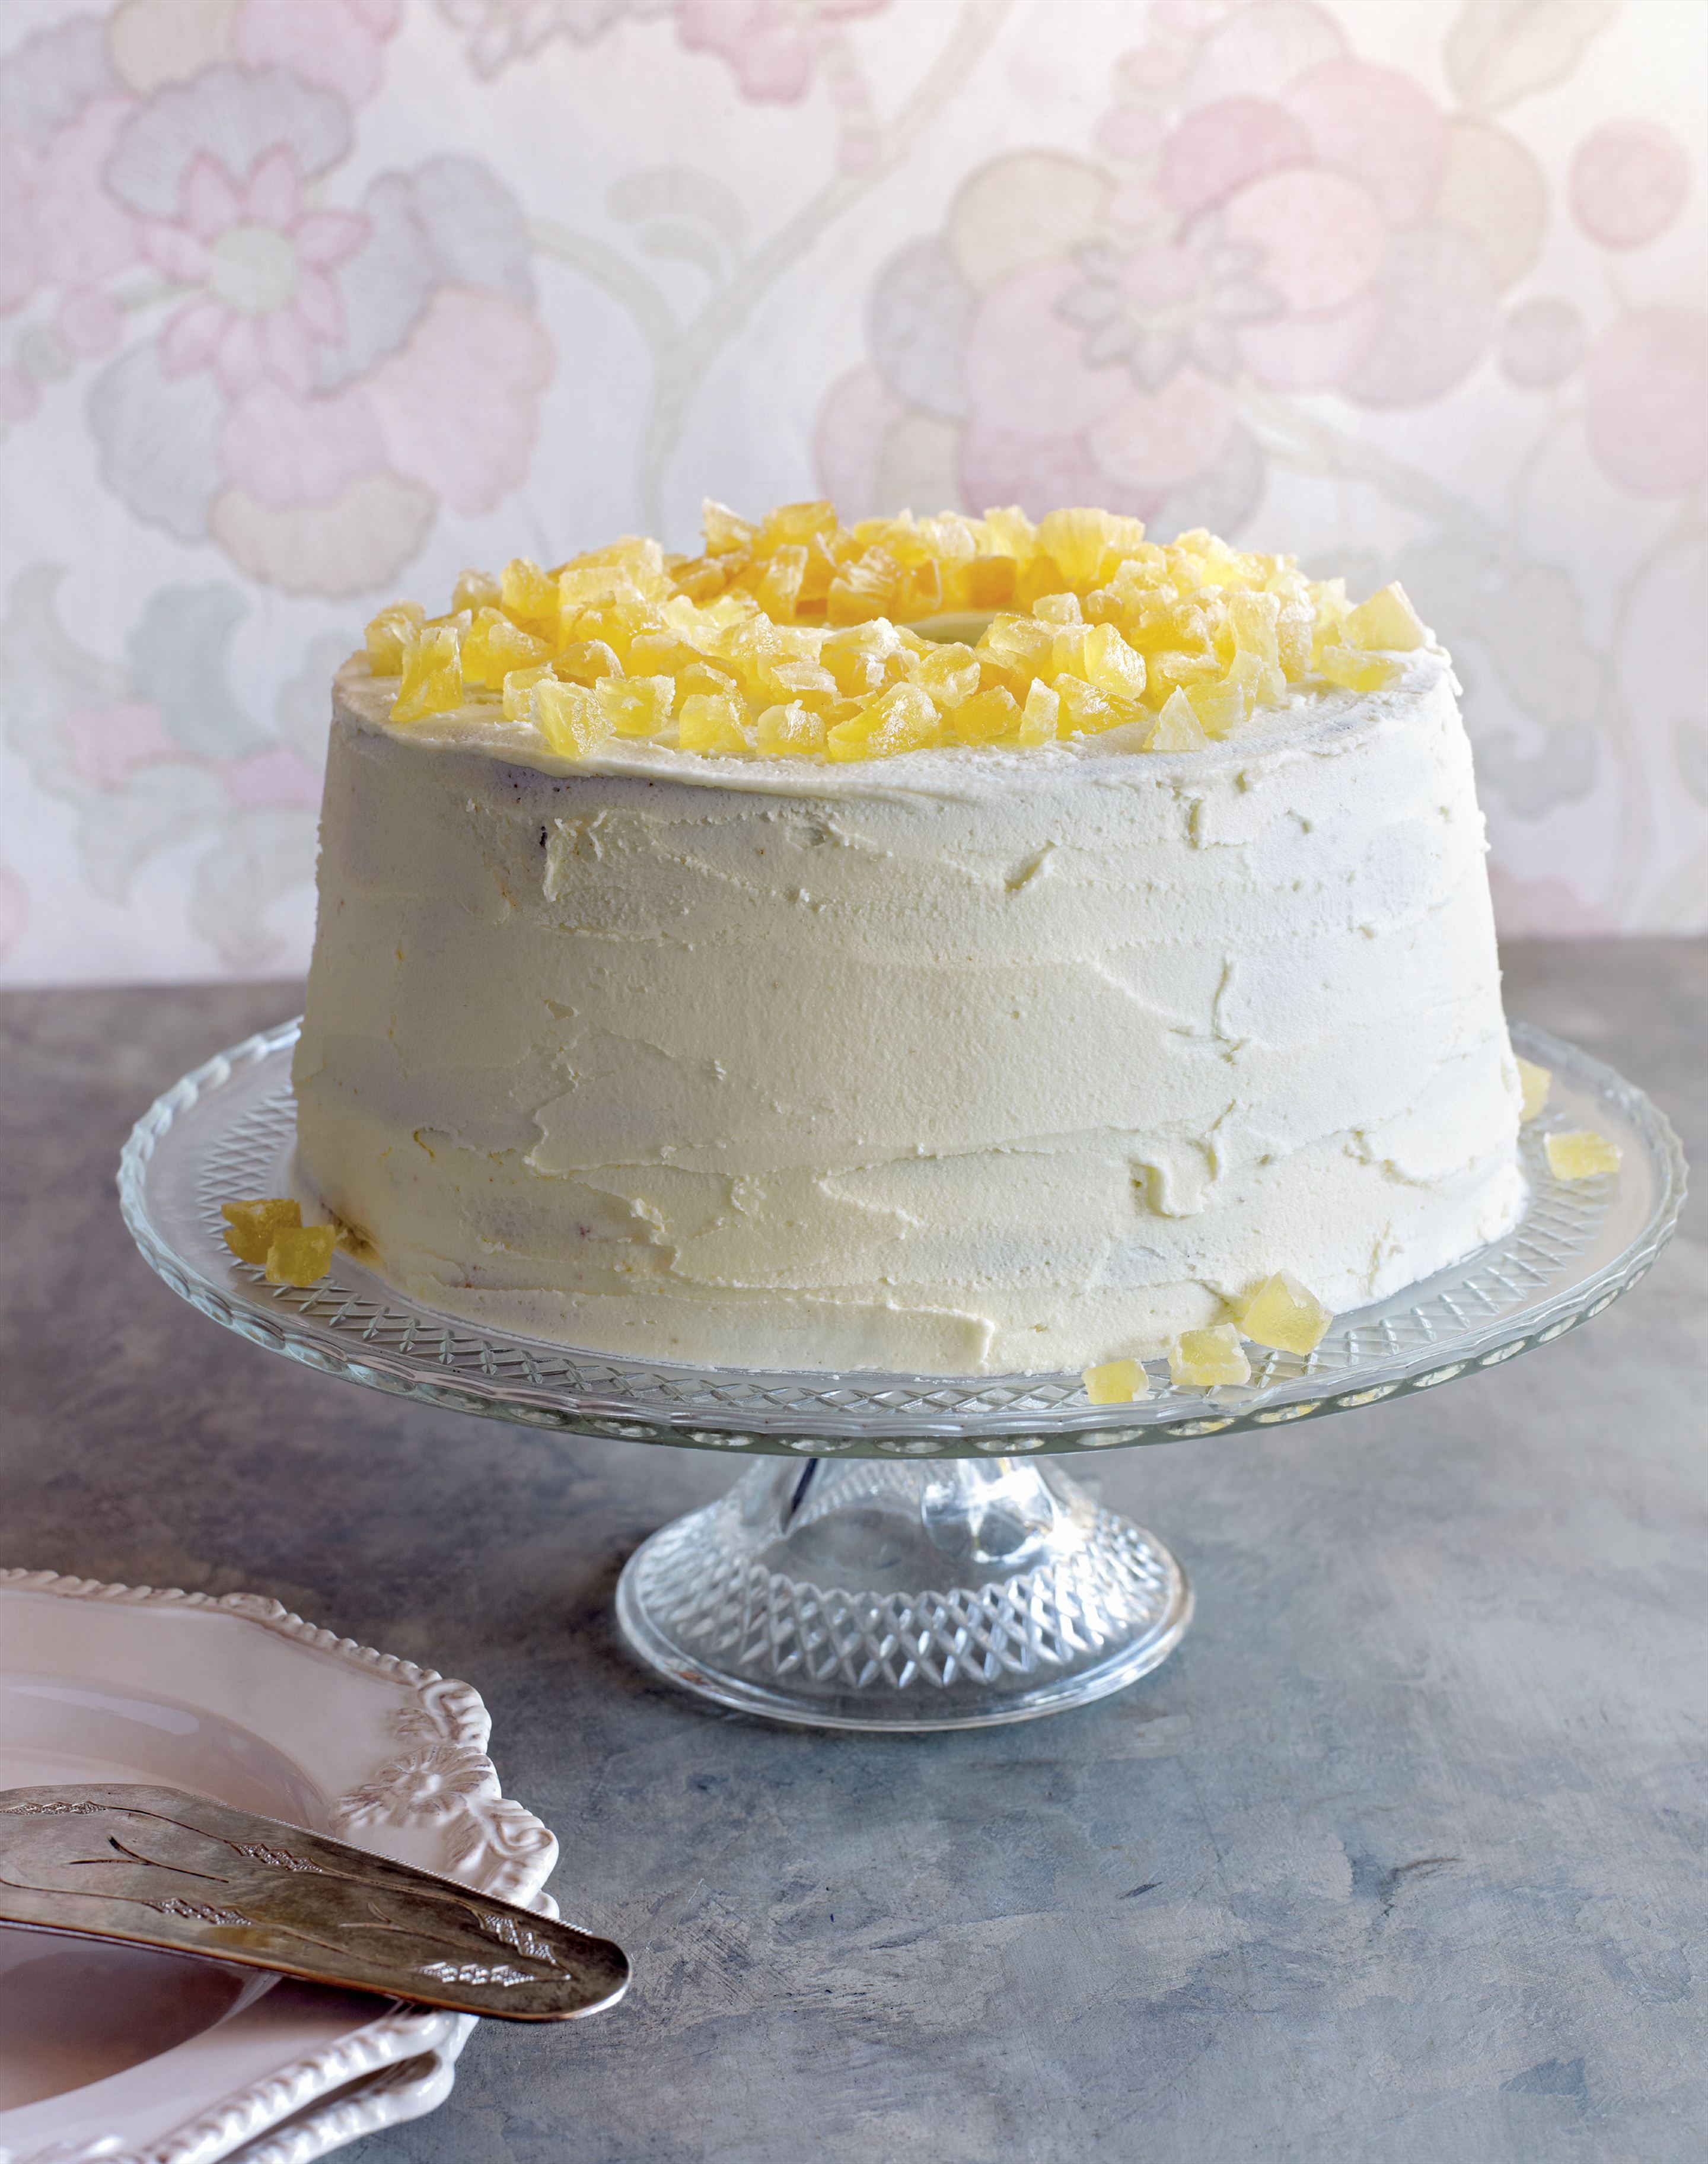 Pineapple chiffon cake